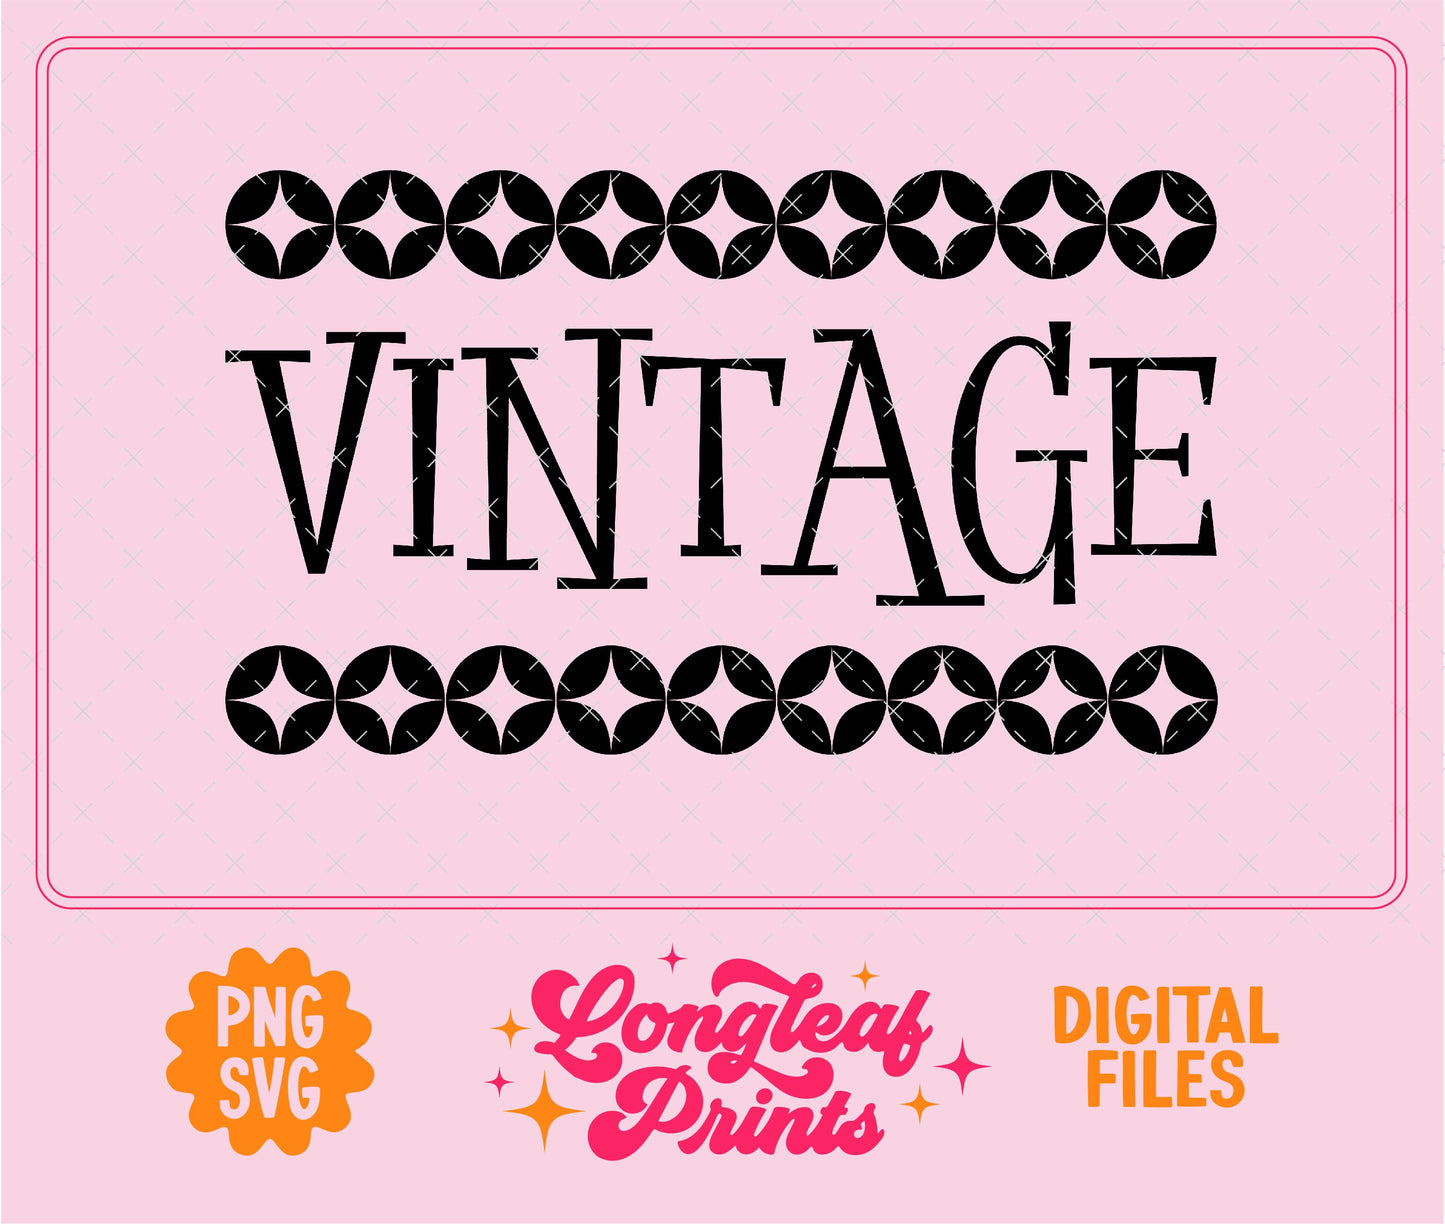 Vintage Retro SVG Digital Download Design File